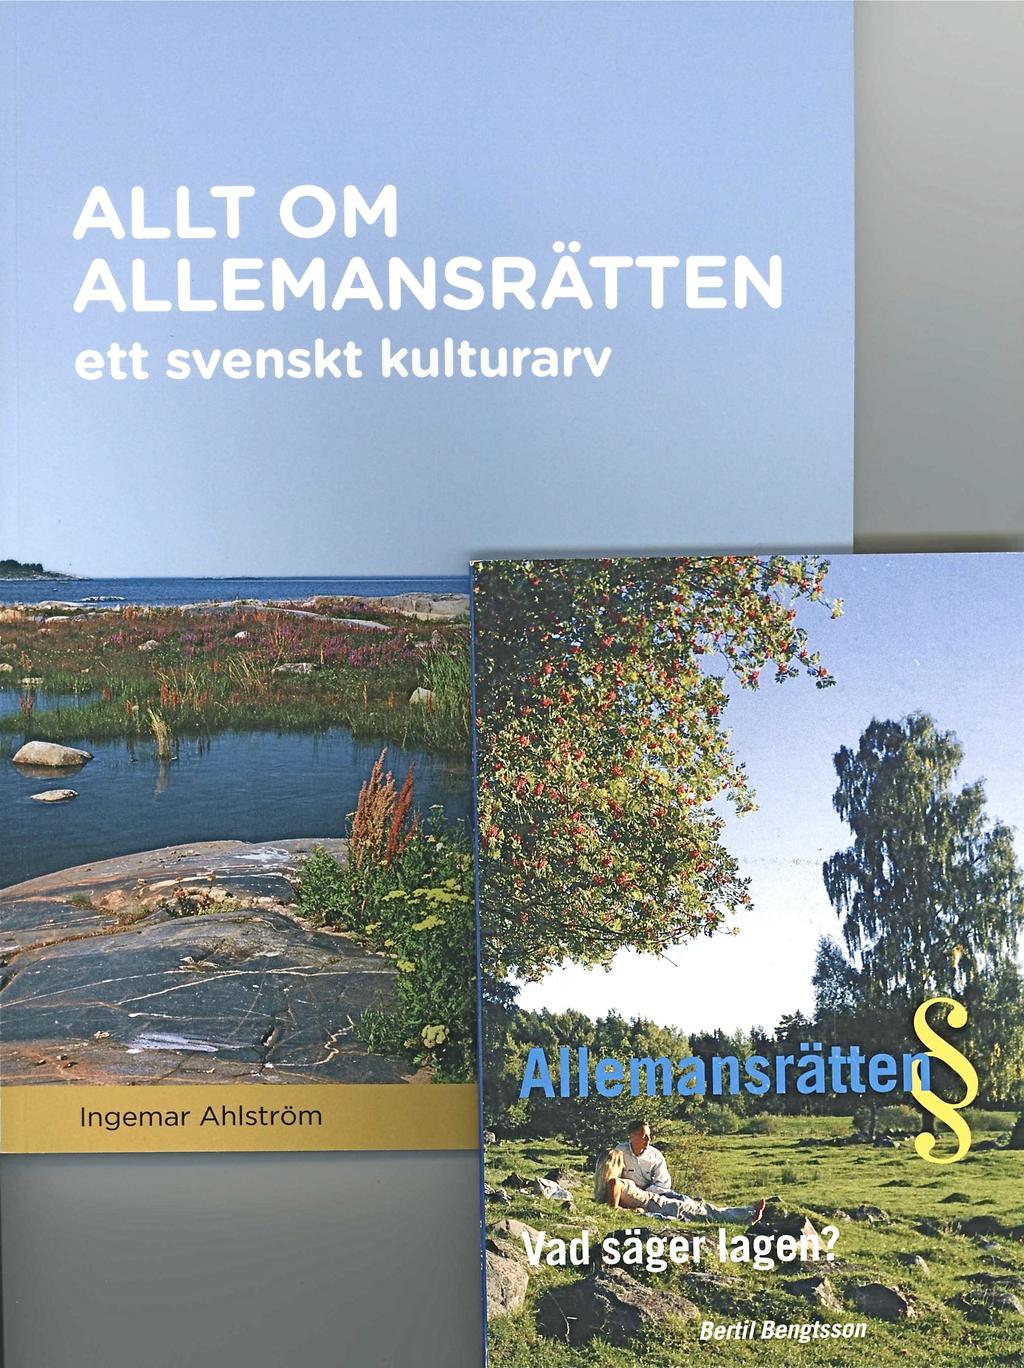 Ahlström, Ingemar 2008. Allt om Allemansrätten: Ett svenskt kulturarv. Hilmas förlag.